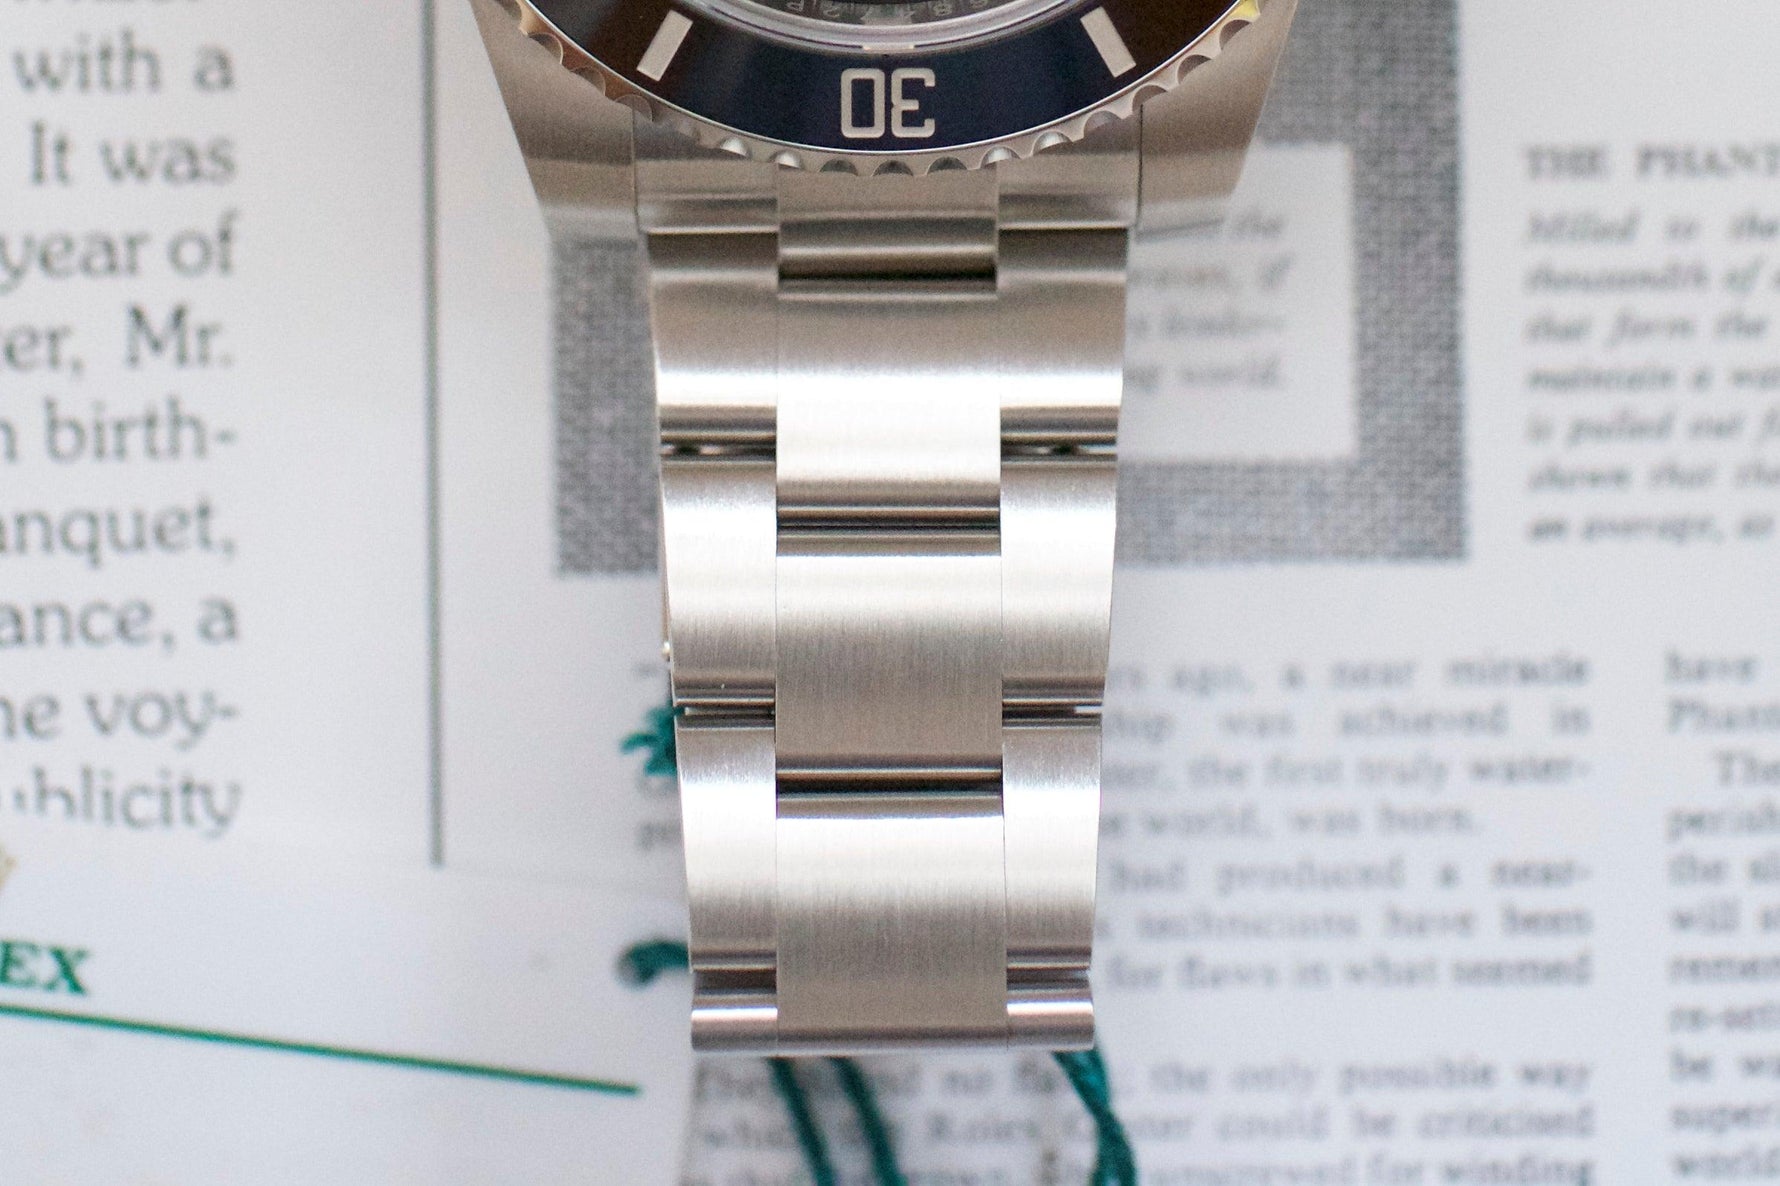 SOLDOUT: Rolex Submariner 116610LN - WearingTime Luxury Watches